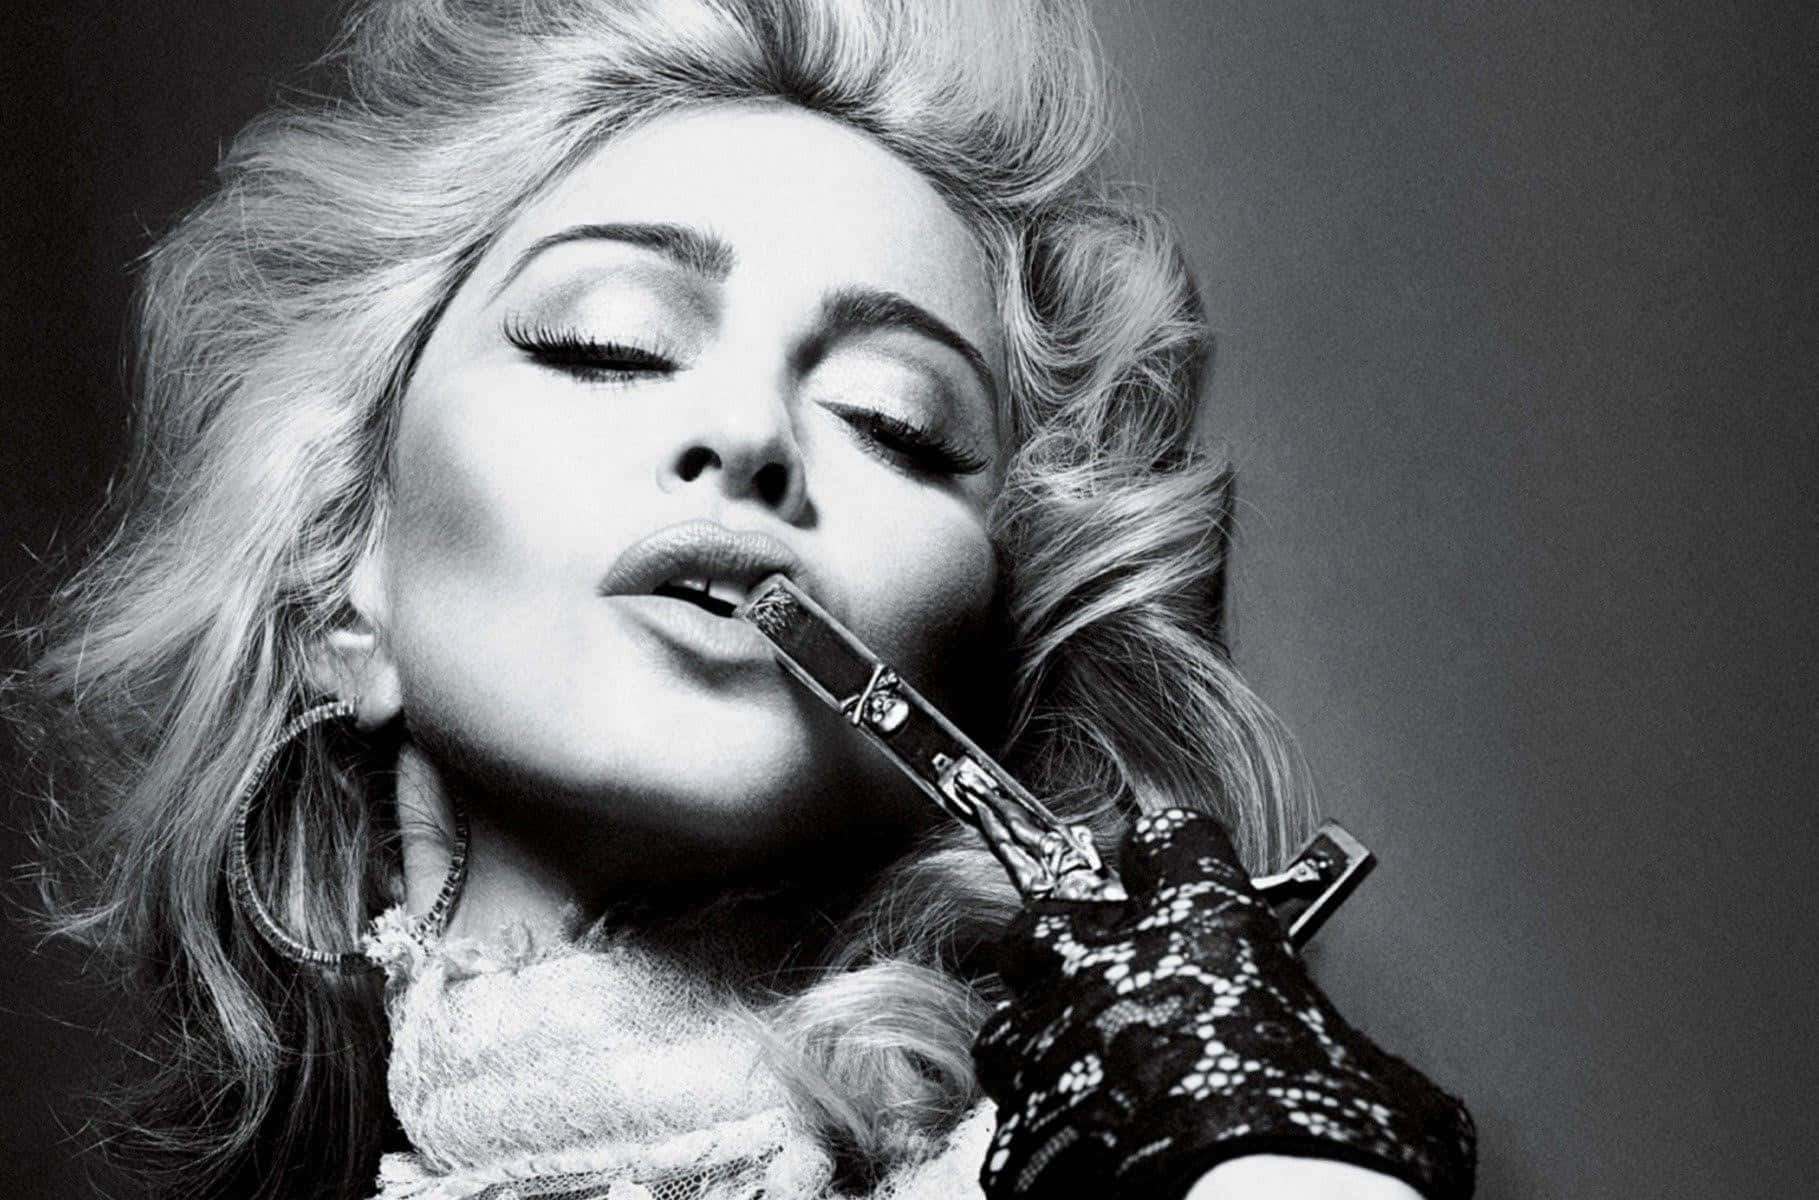 Ikoniskapopstjärnan Madonna